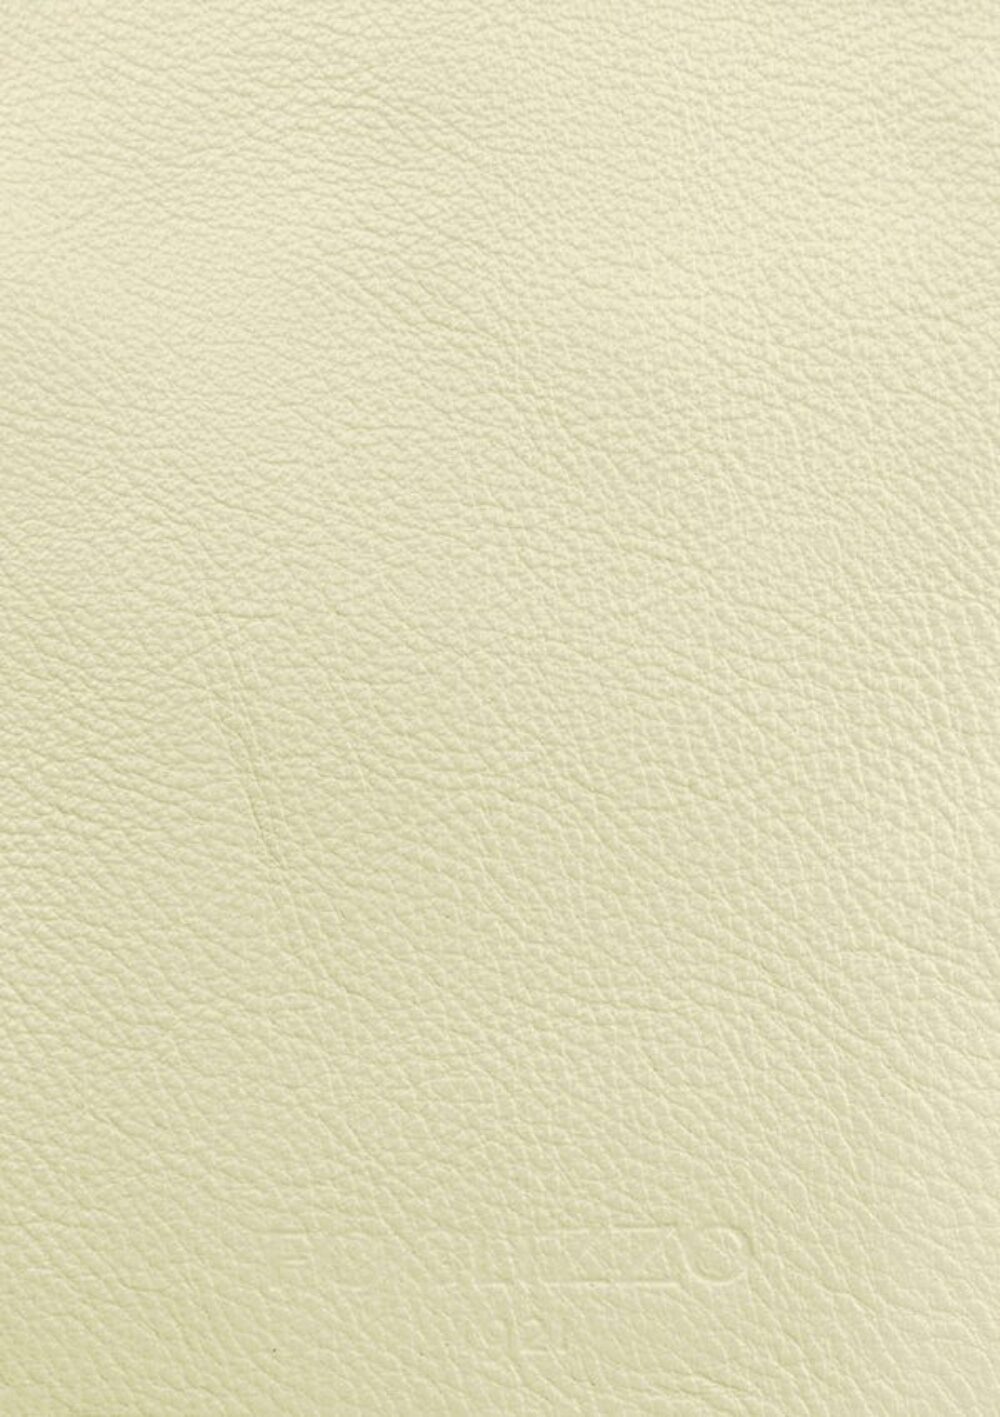 奢华地毯的境界 • Yellow Pearl White Jade